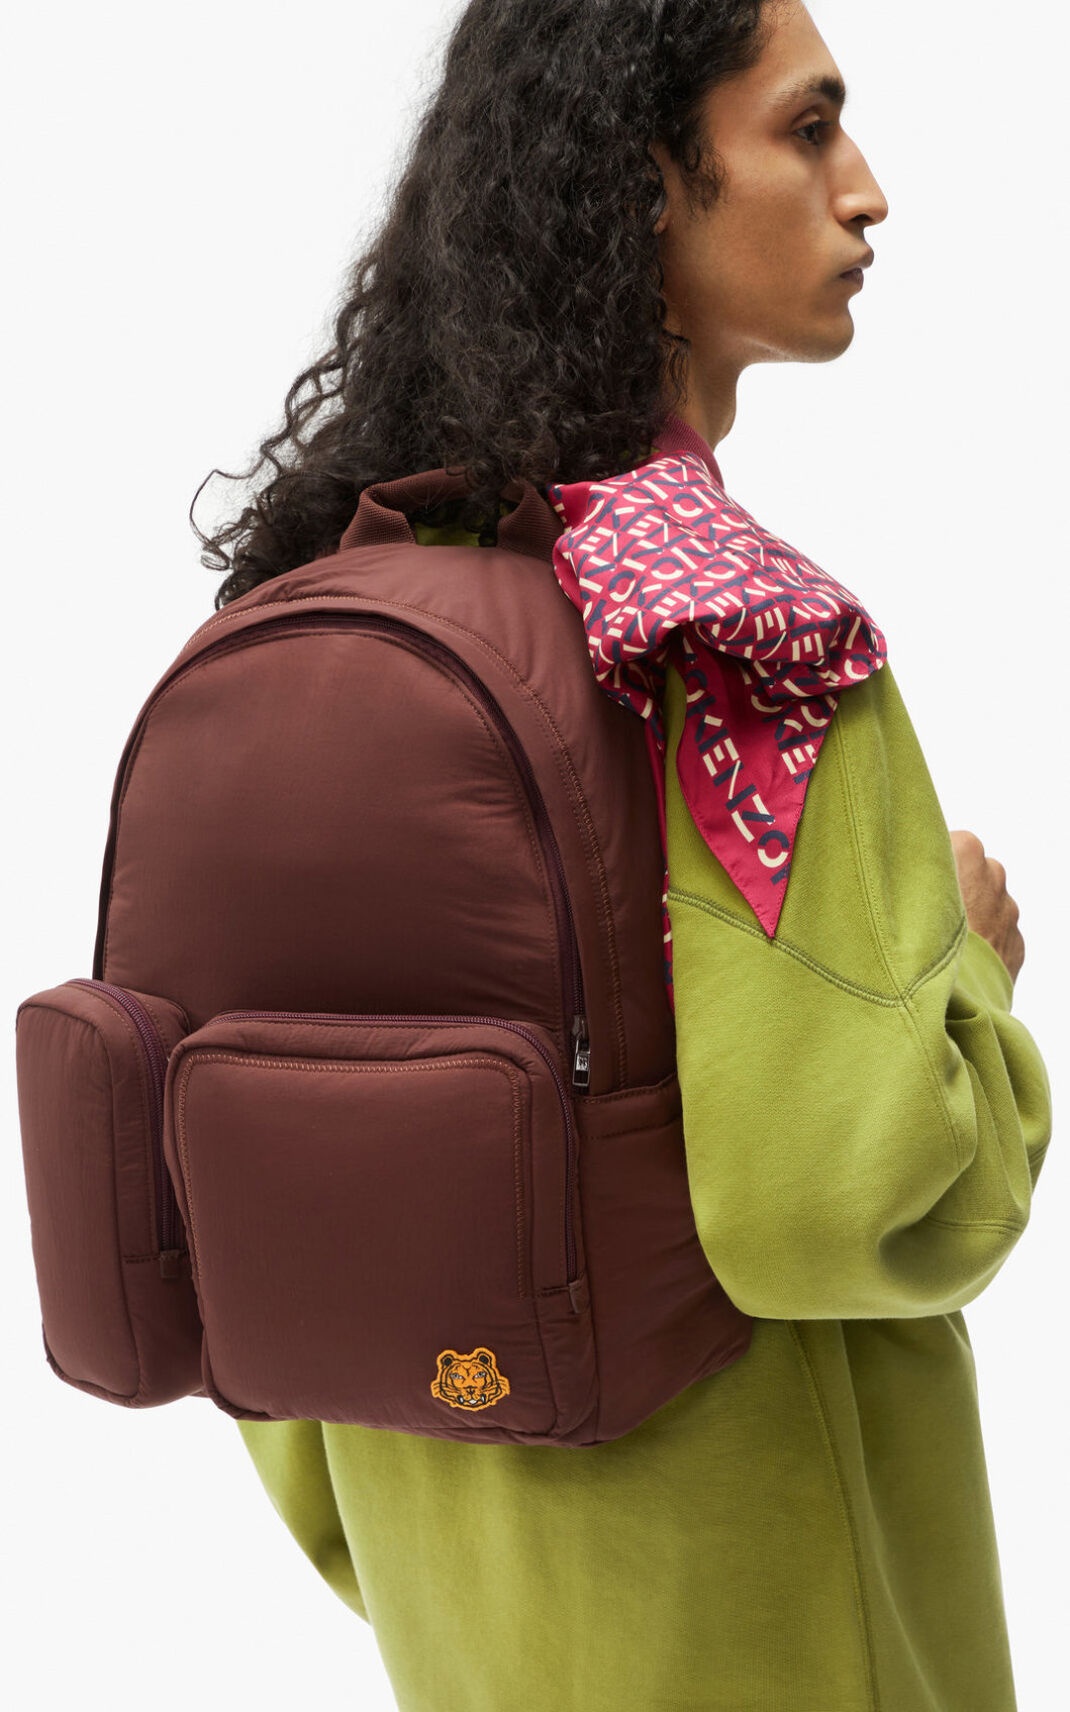 Tiger Crest backpack - 5